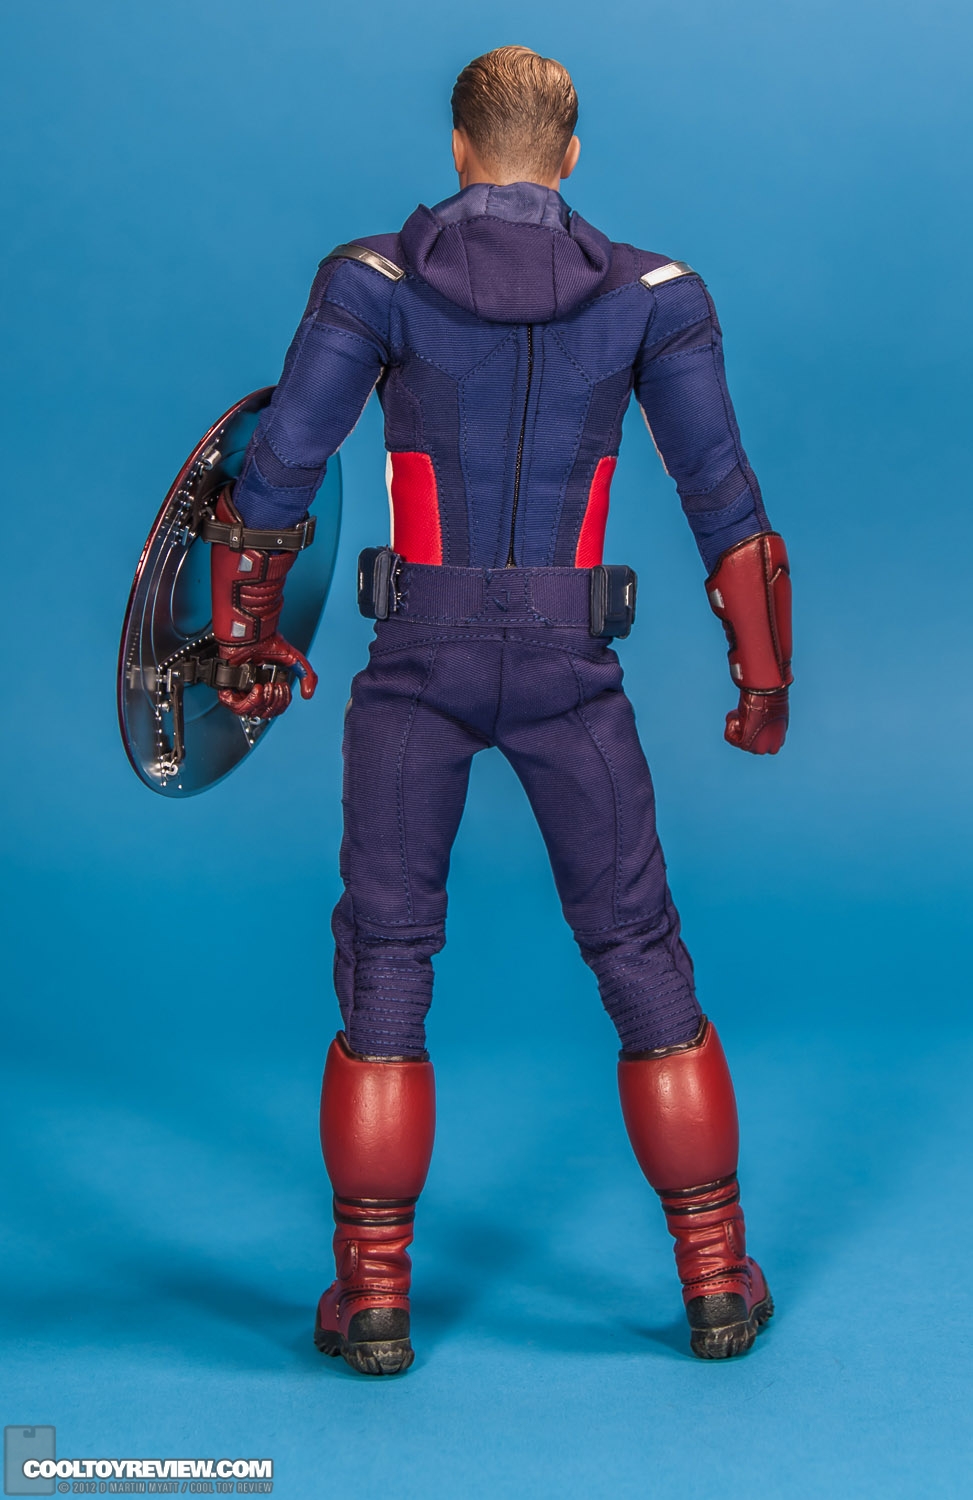 Captain_America_Avengers_Hot_Toys-12.jpg